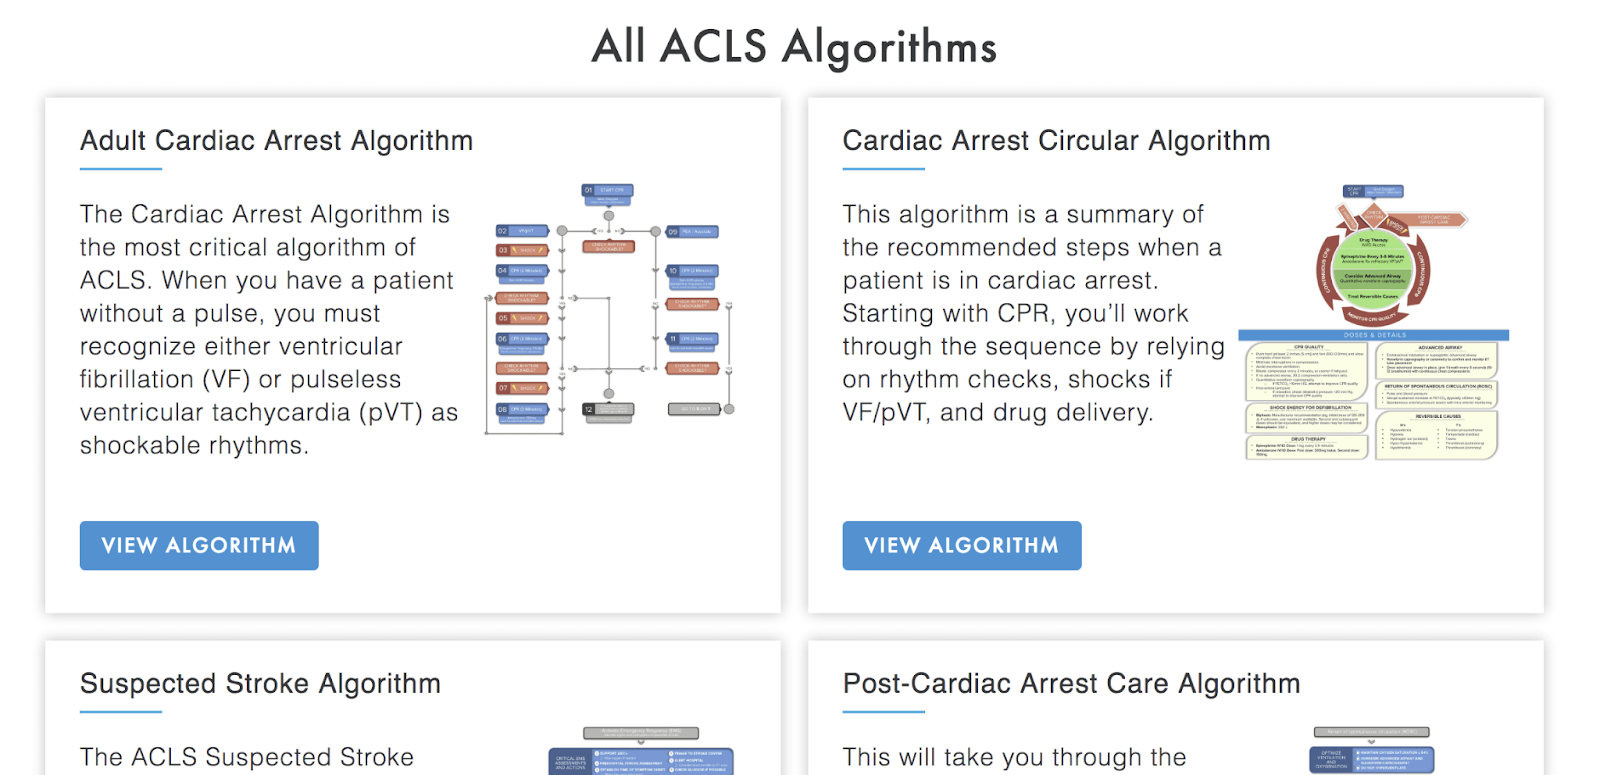 All ACLS Algorithms